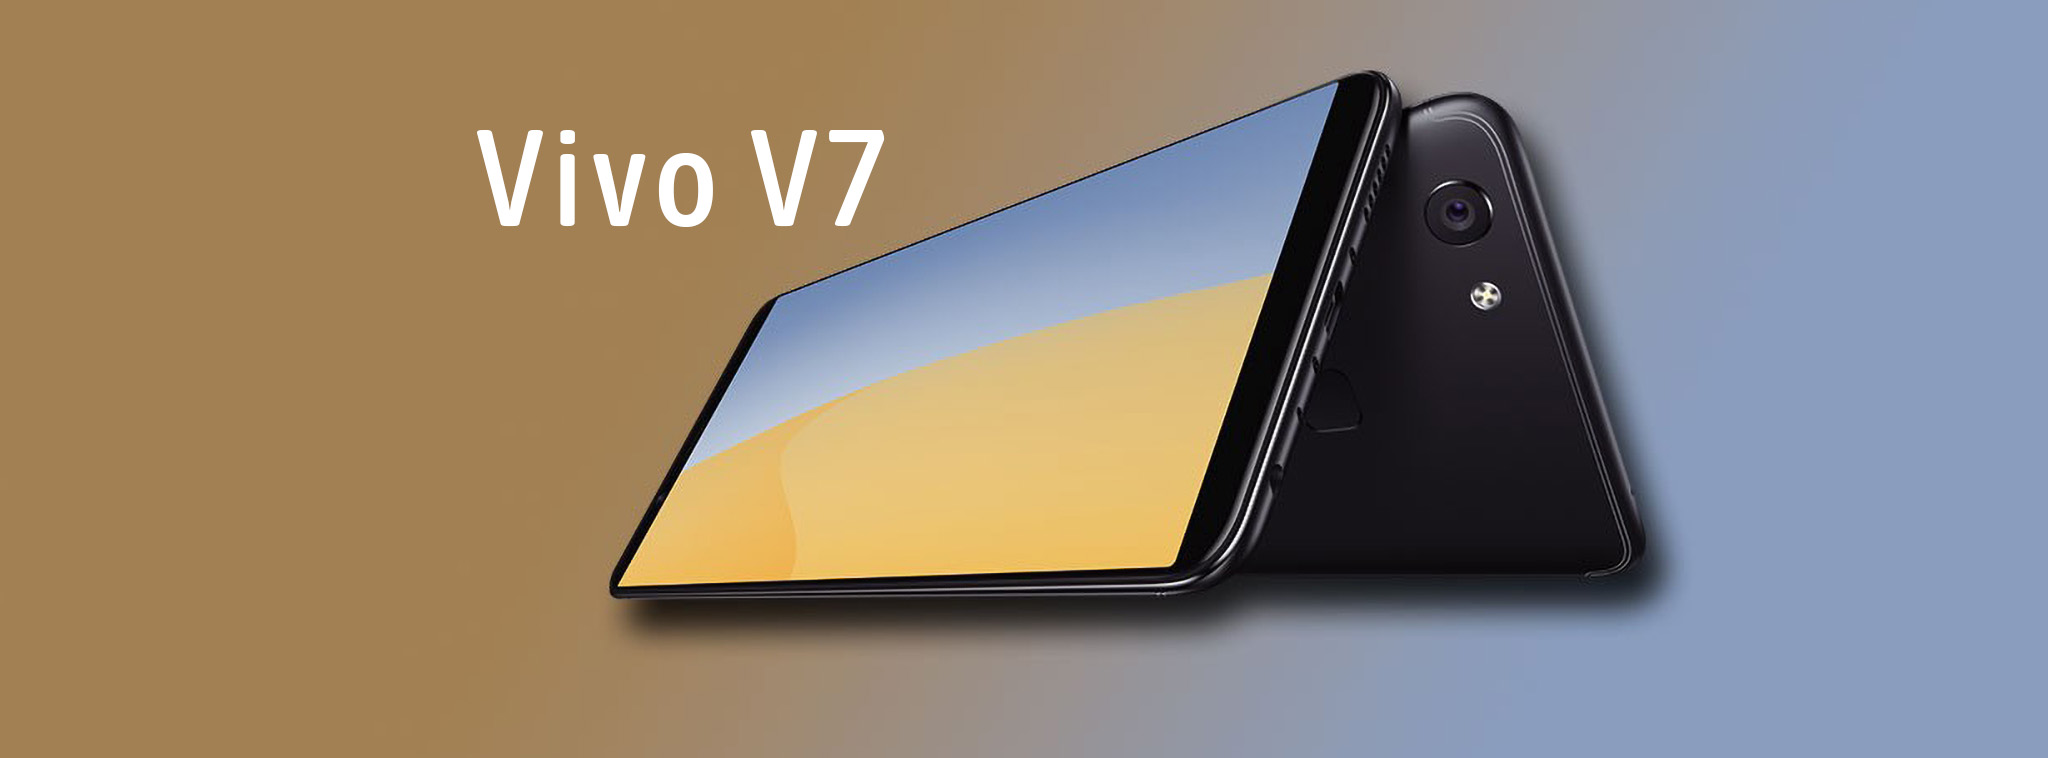 Vivo V7 chính thức: 5,7" tỷ lệ 18:9, 4GB / 32GB, giá khoảng 300 USD